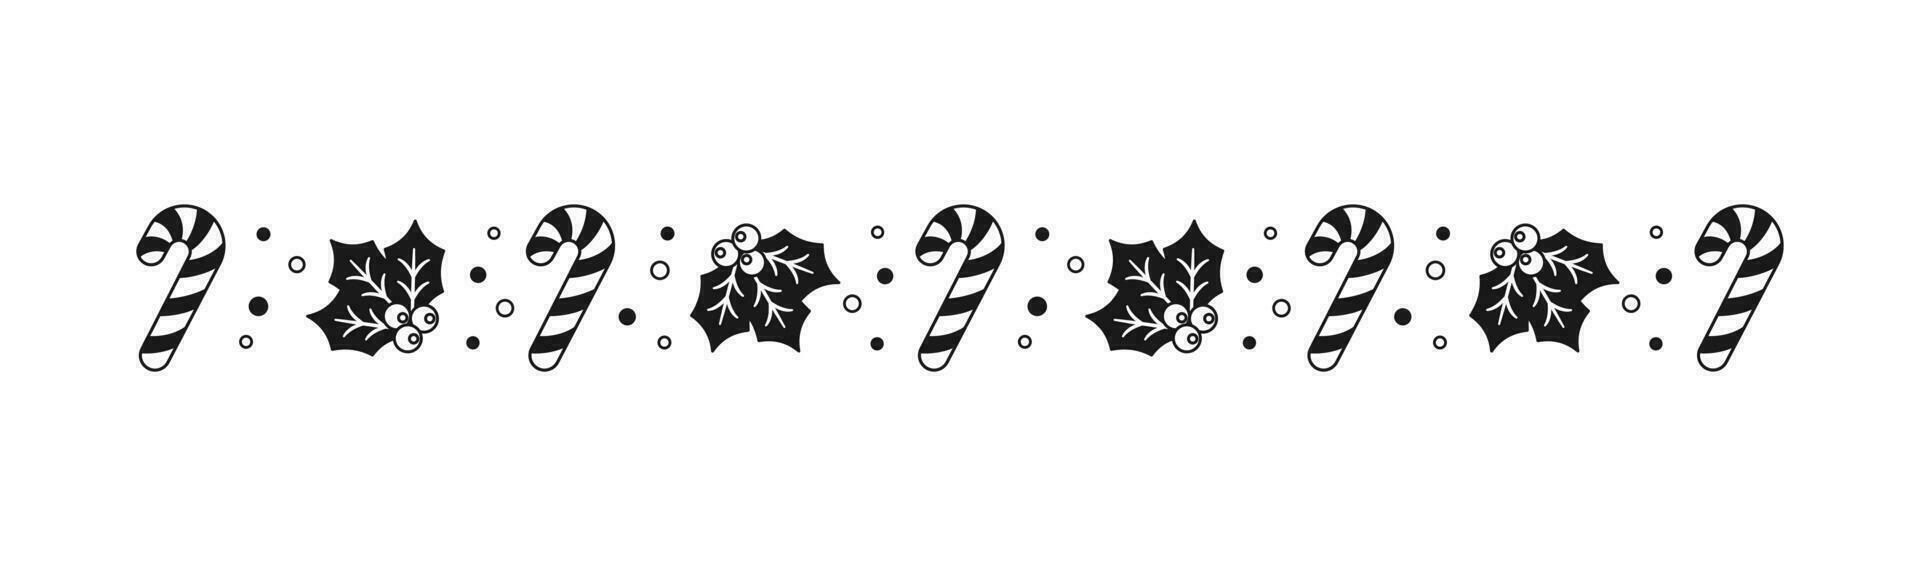 Natal temático decorativo fronteira e texto divisor, visco e doce bengala padronizar silhueta. vetor ilustração.